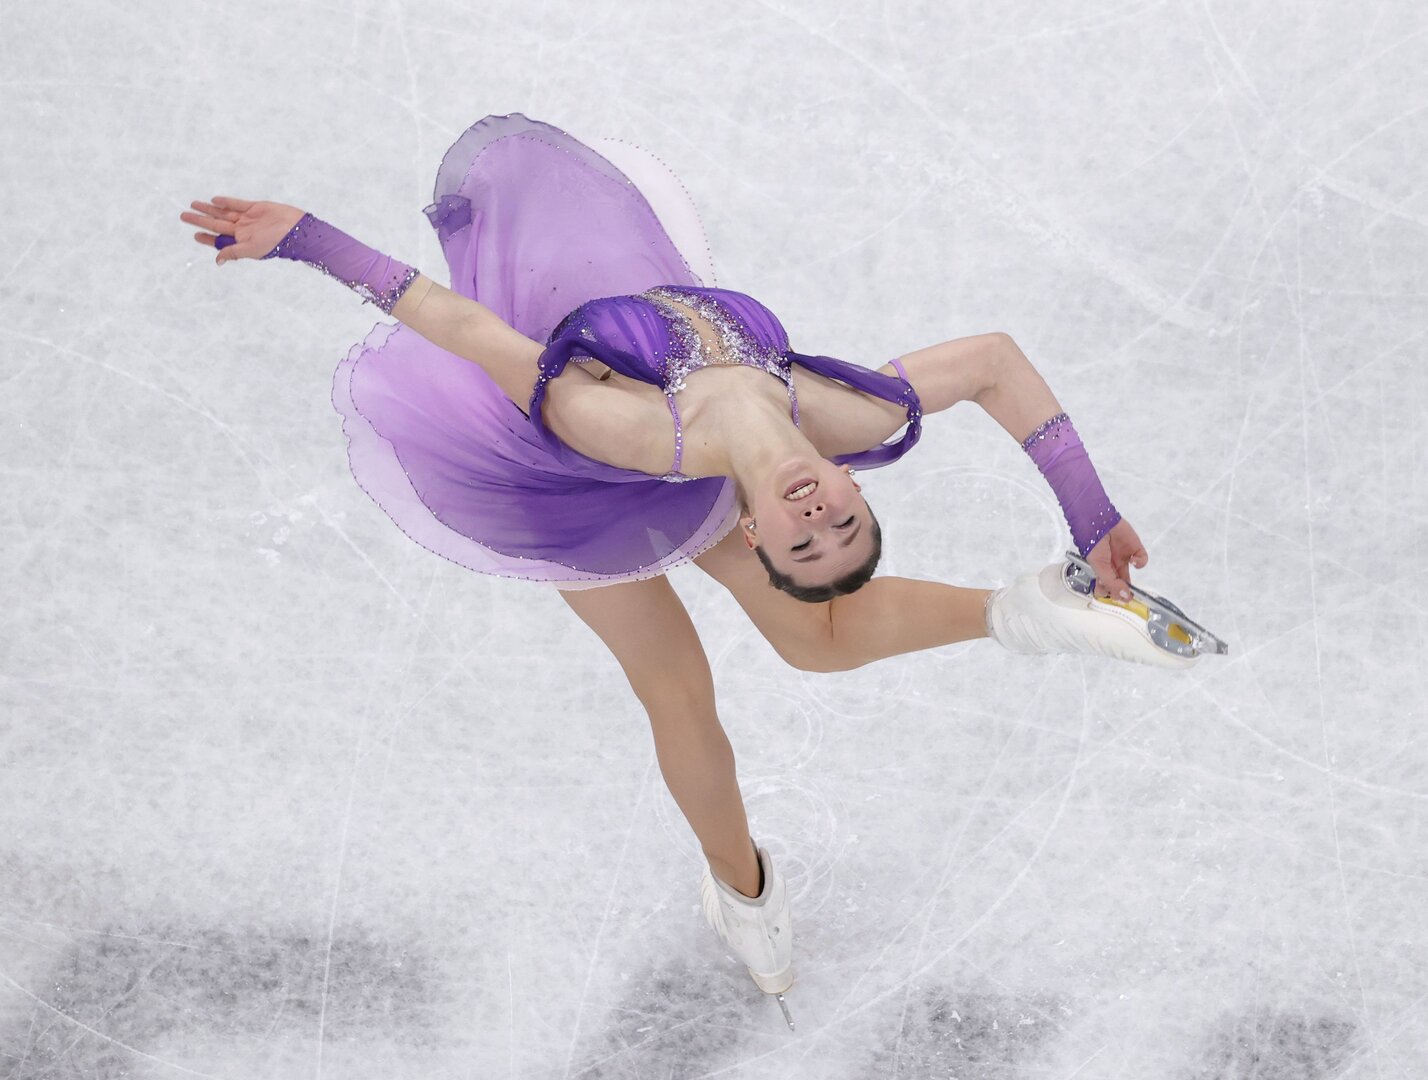 محكمة التحكيم الرياضية ترفض الاستئناف الأمريكي بخصوص ميداليات التزحلق على الجليد في بكين